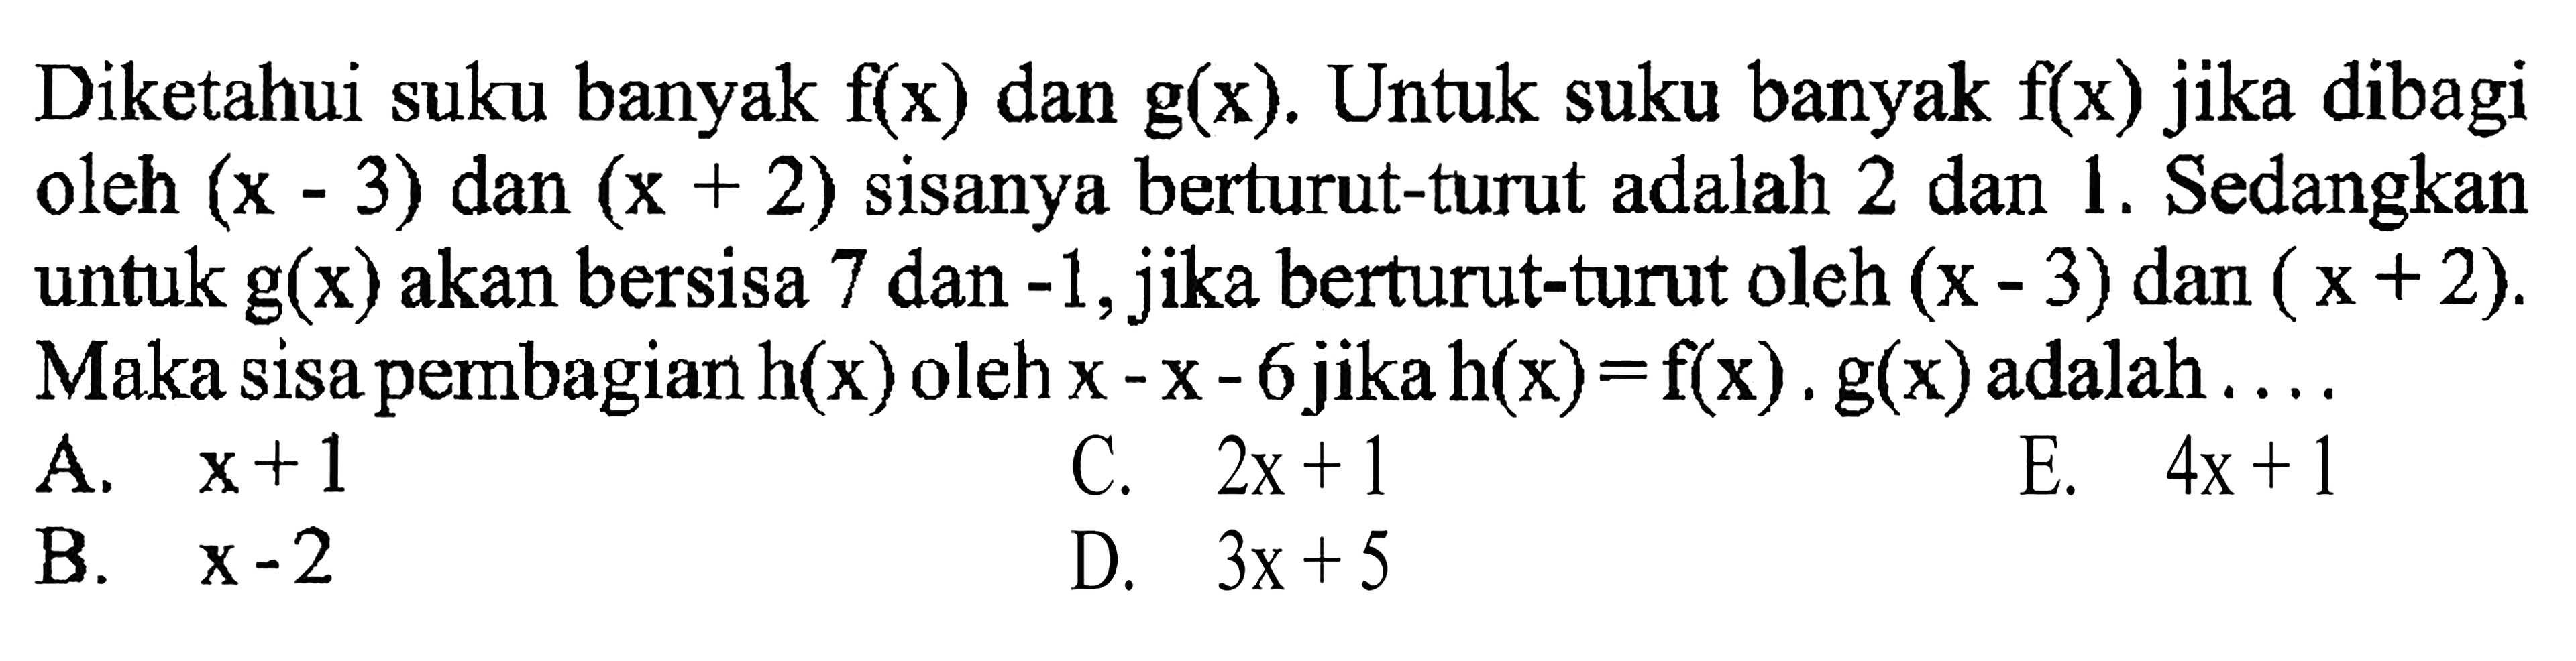 Diketahui suku banyak f(x) dan g(x). Untuk suku banyak f(x) jika dibagi oleh (x-3) dan (x+2) sisanya berturut-turut adalah 2 dan 1. Sedangkan untuk g(x) akan bersisa 7 dan -1, jika berturut-turut oleh (x-3) dan (x+2). Maka sisa pembagian h(x) oleh x-x-6 jika h(x)-f(x).g(x) adalah ....